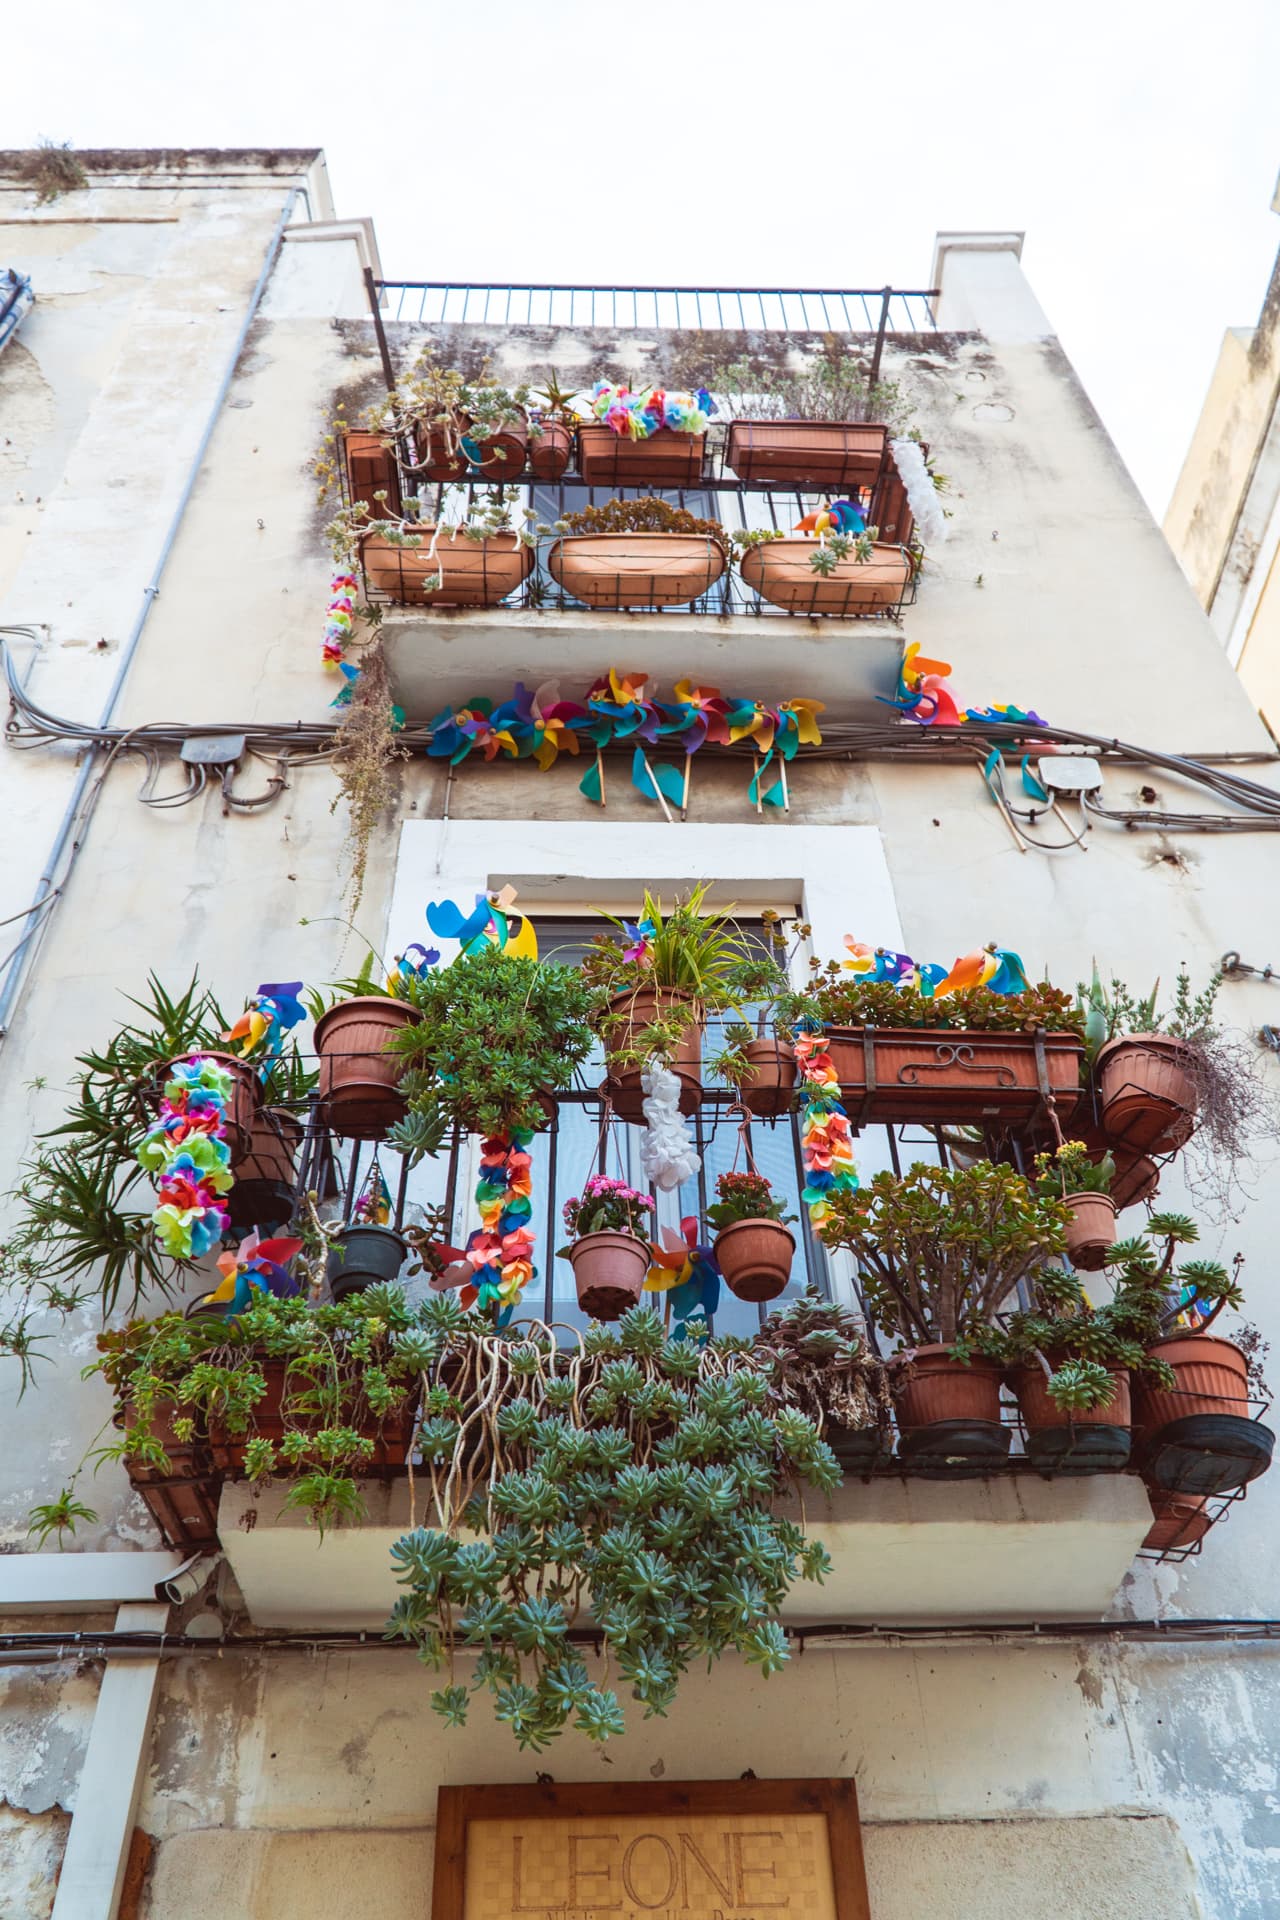 Balkony w Bari | Plan wyjazdu do Apulii